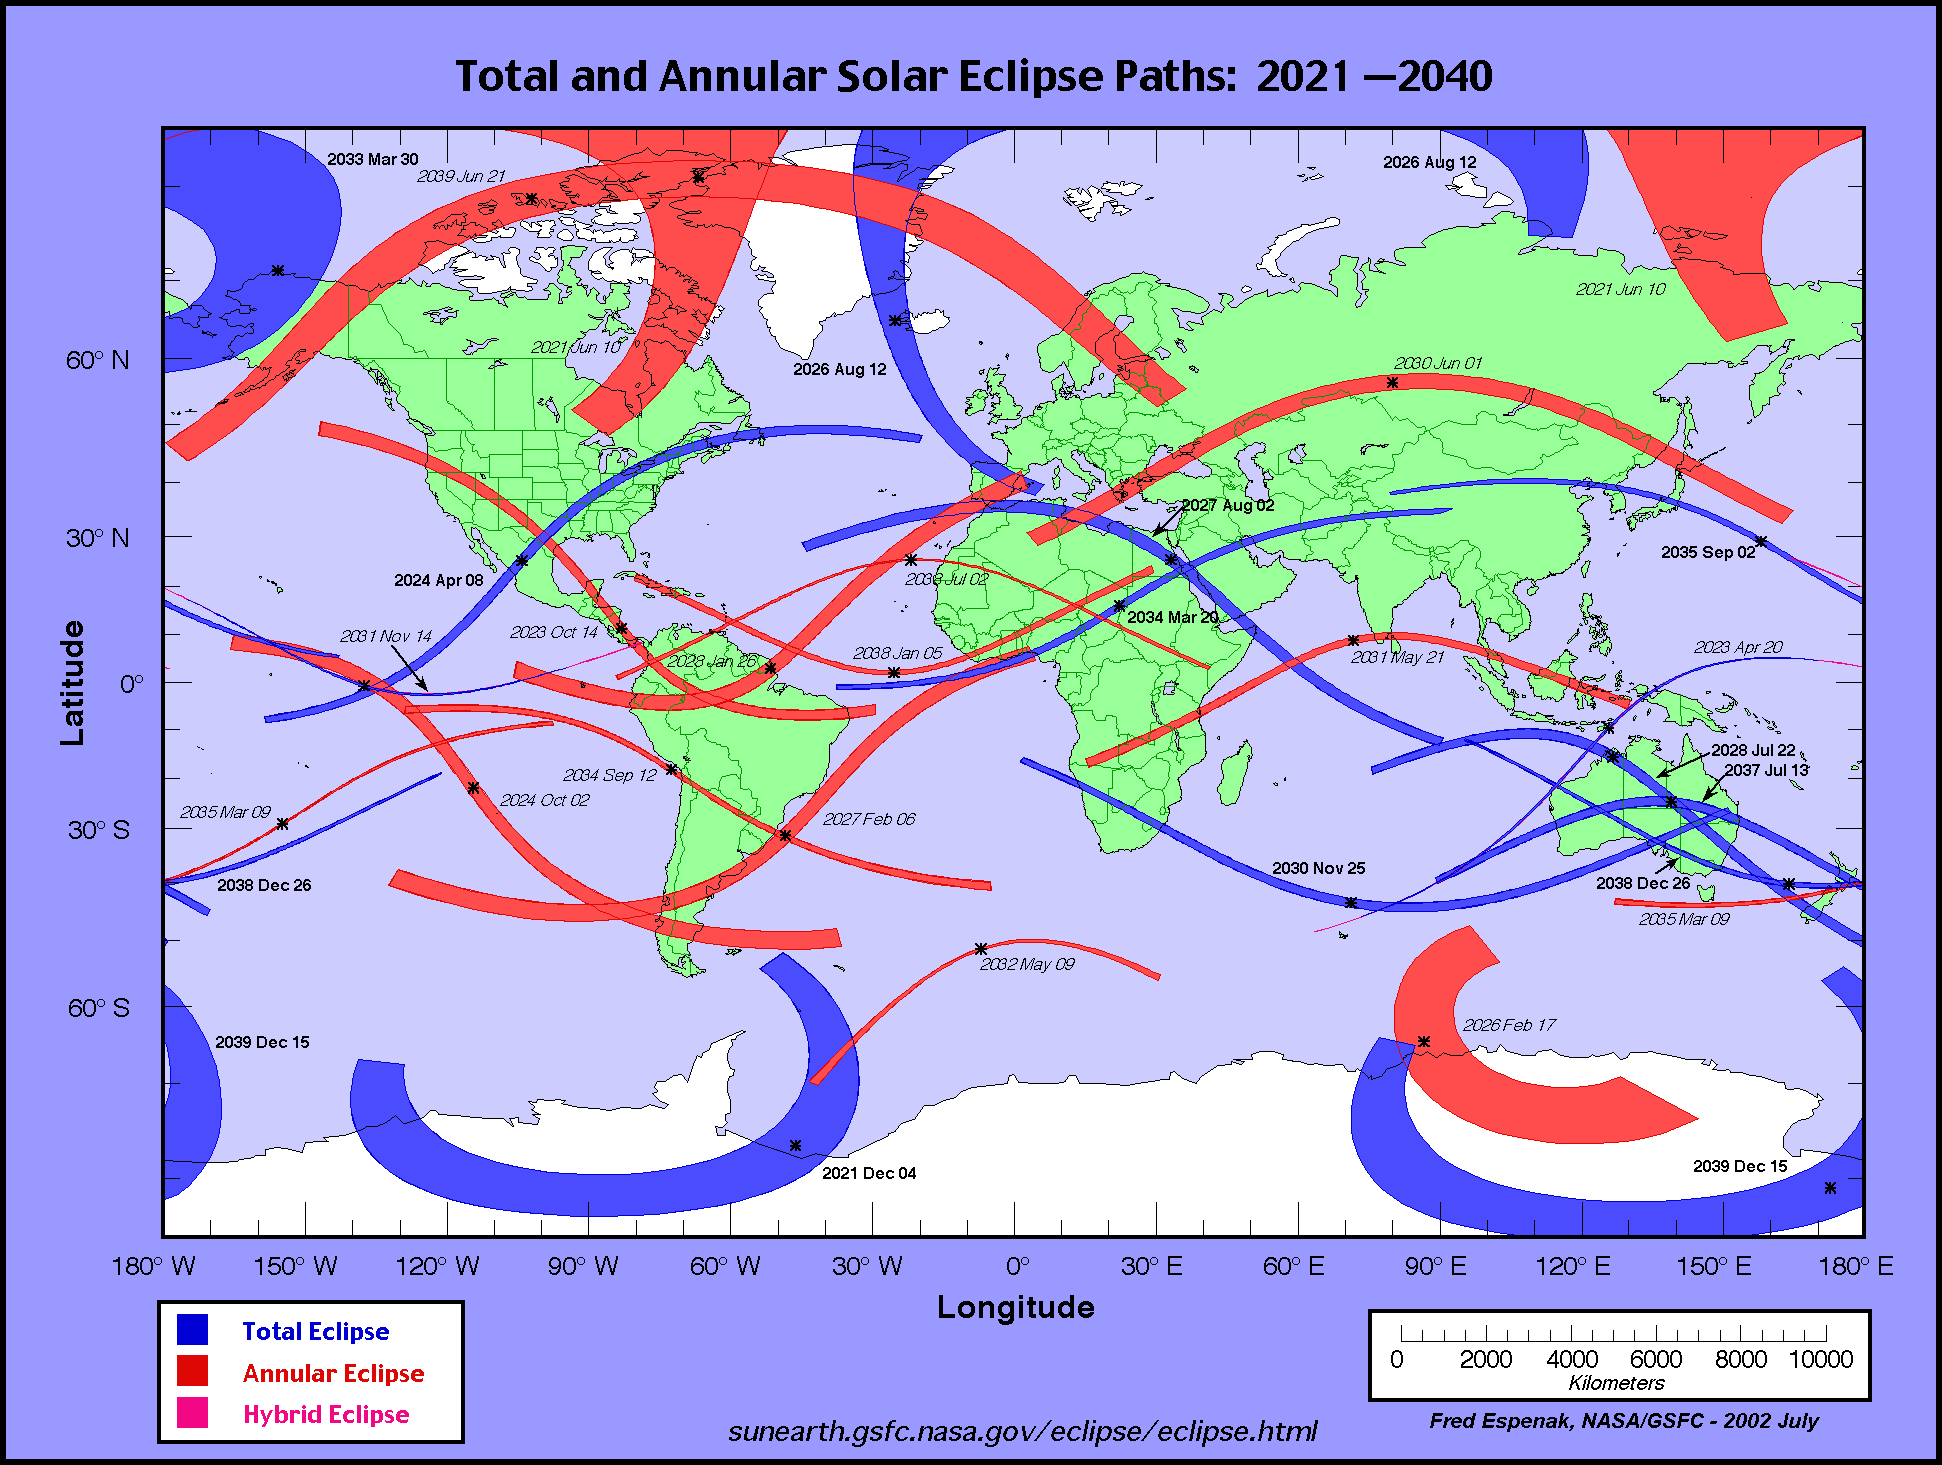 http://eclipse.gsfc.nasa.gov/SEatlas/SEatlas3/SEatlas2021.GIF